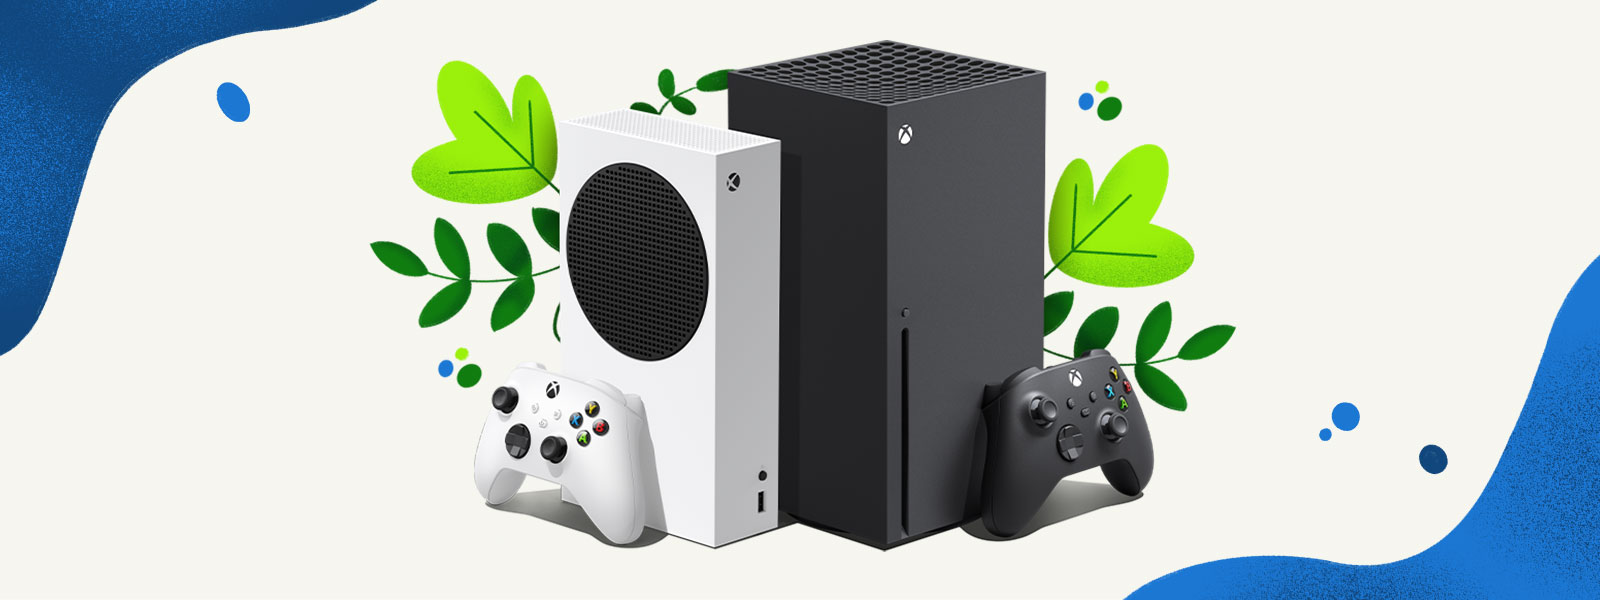 Две консоли Xbox Series X и Xbox Series S на декоративном фоне из растений с брызгами голубой воды.